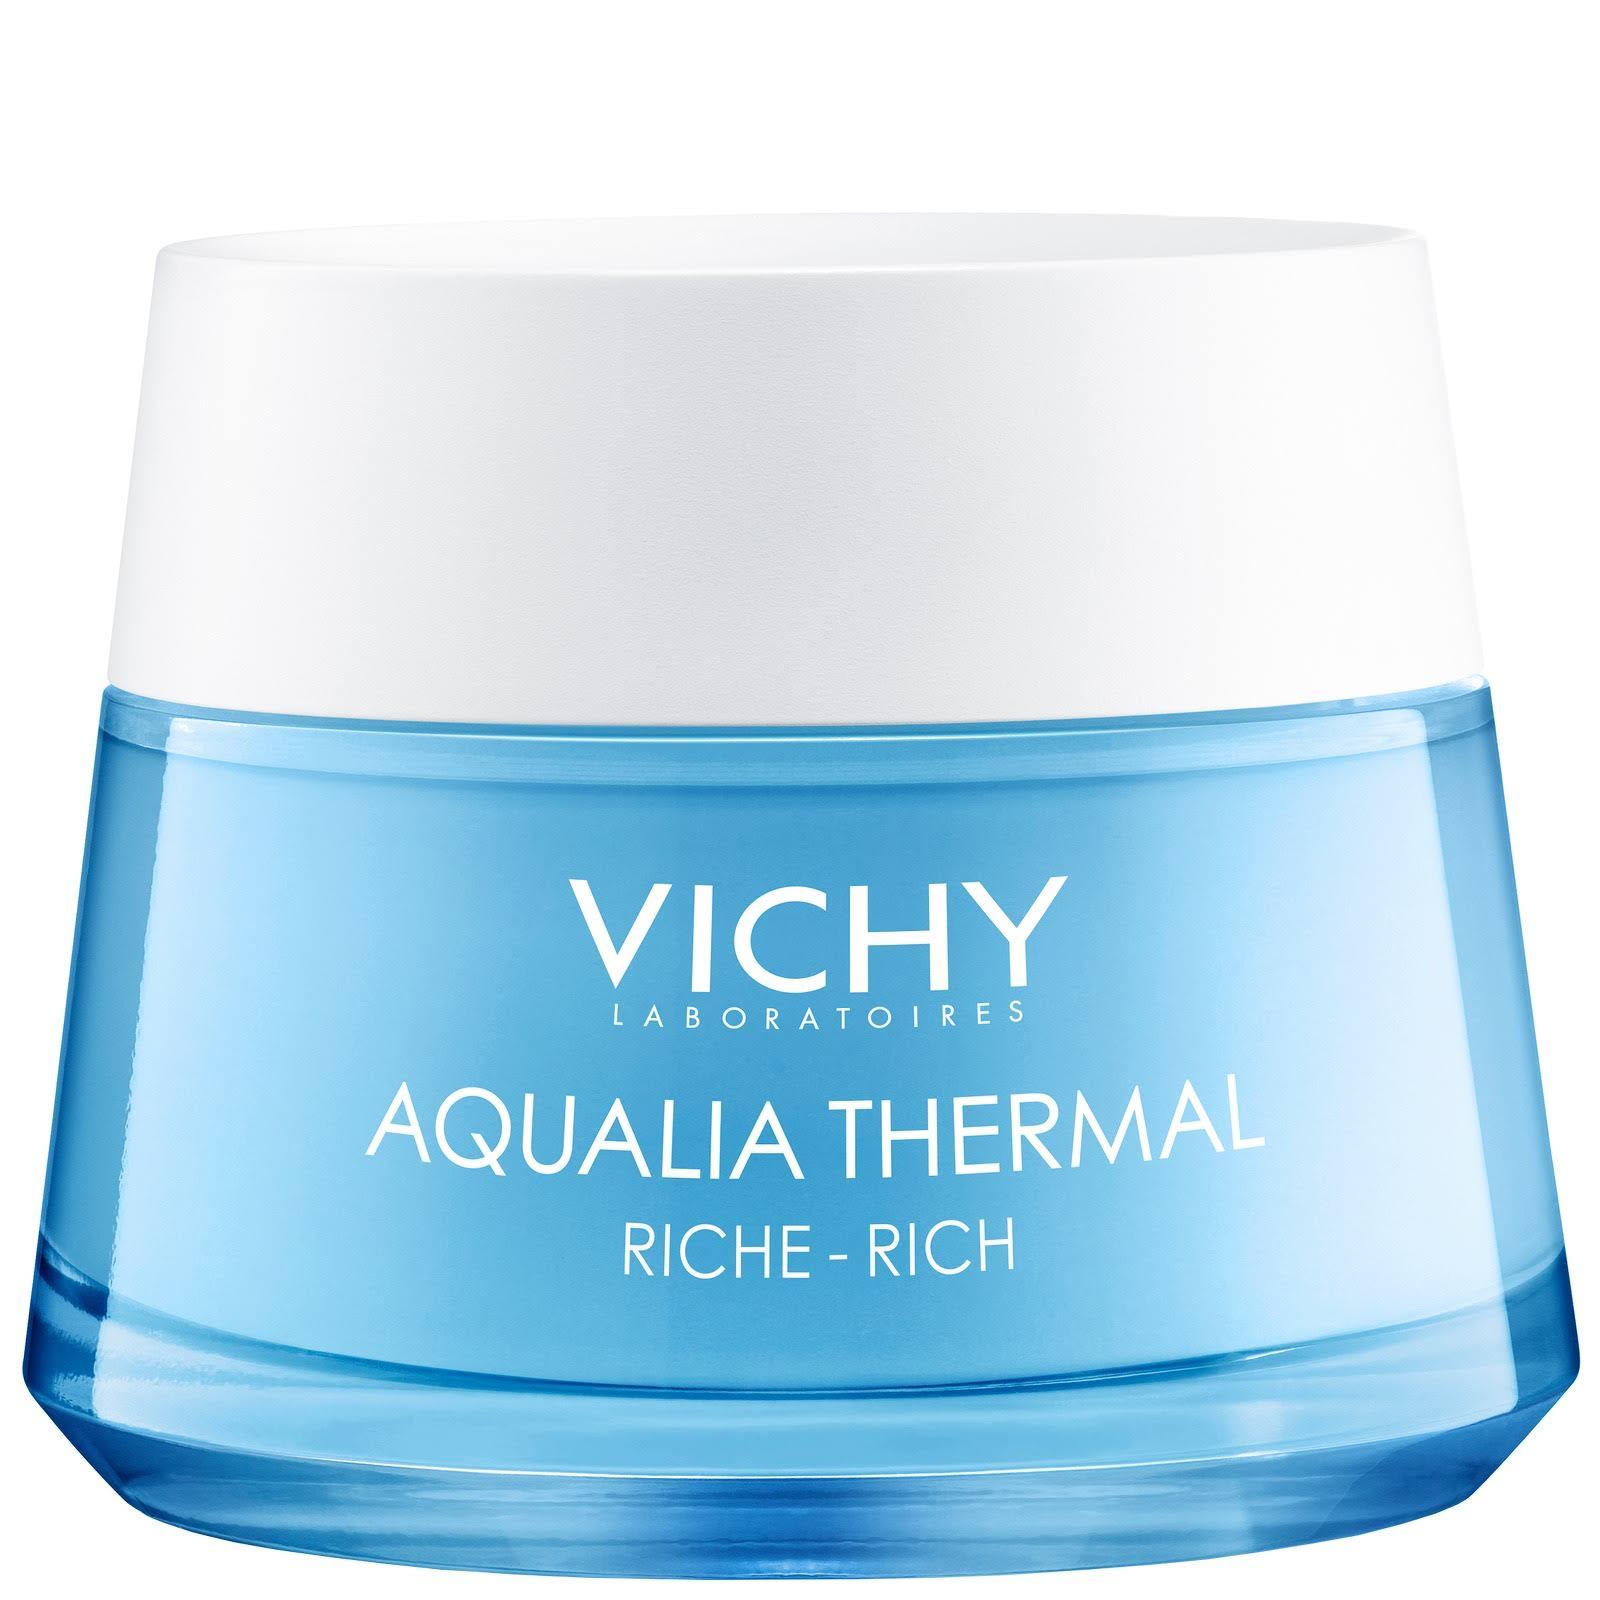 Vichy Rehydrating Cream, Rich, Aqualia Thermal - 50 ml